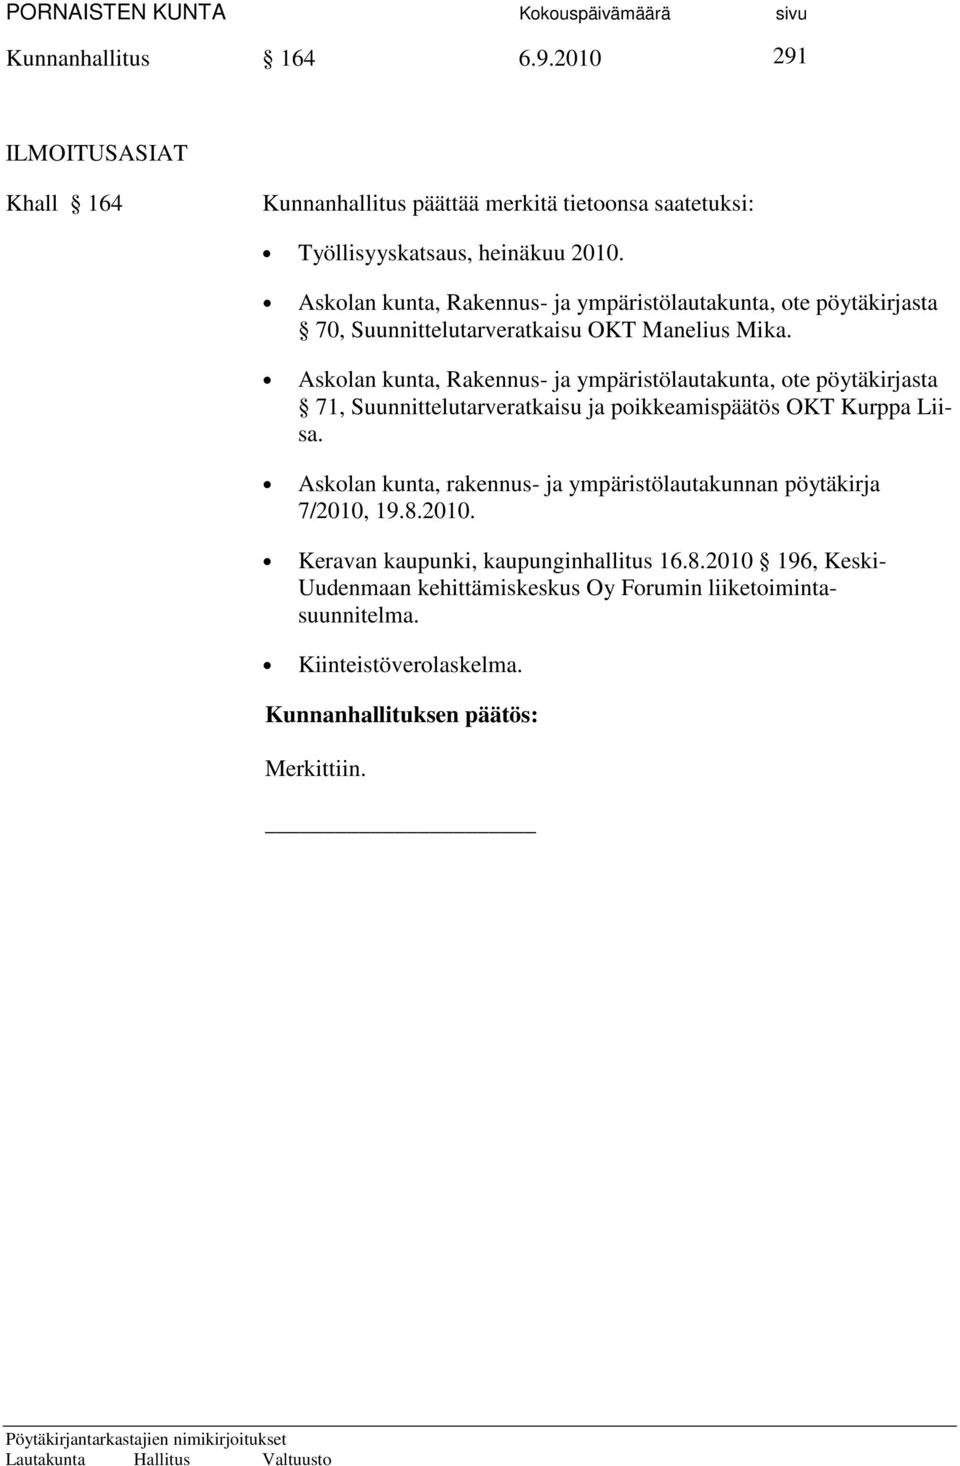 Askolan kunta, Rakennus- ja ympäristölautakunta, ote pöytäkirjasta 71, Suunnittelutarveratkaisu ja poikkeamispäätös OKT Kurppa Liisa.